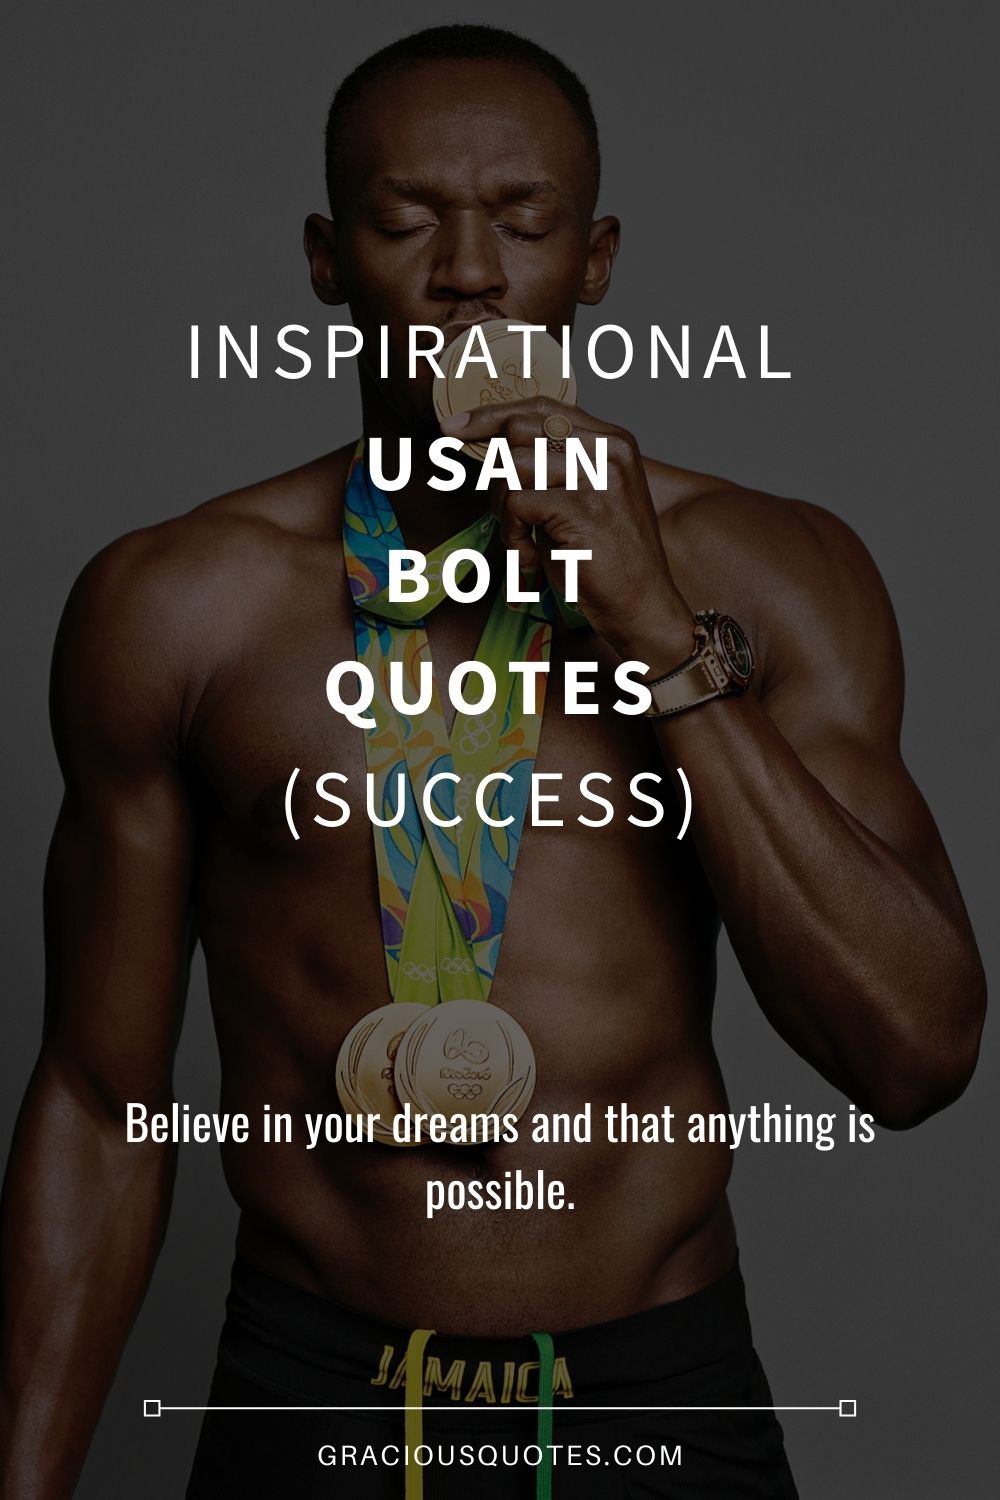 Inspirational Usain Bolt Quotes (SUCCESS) - Gracious Quotes